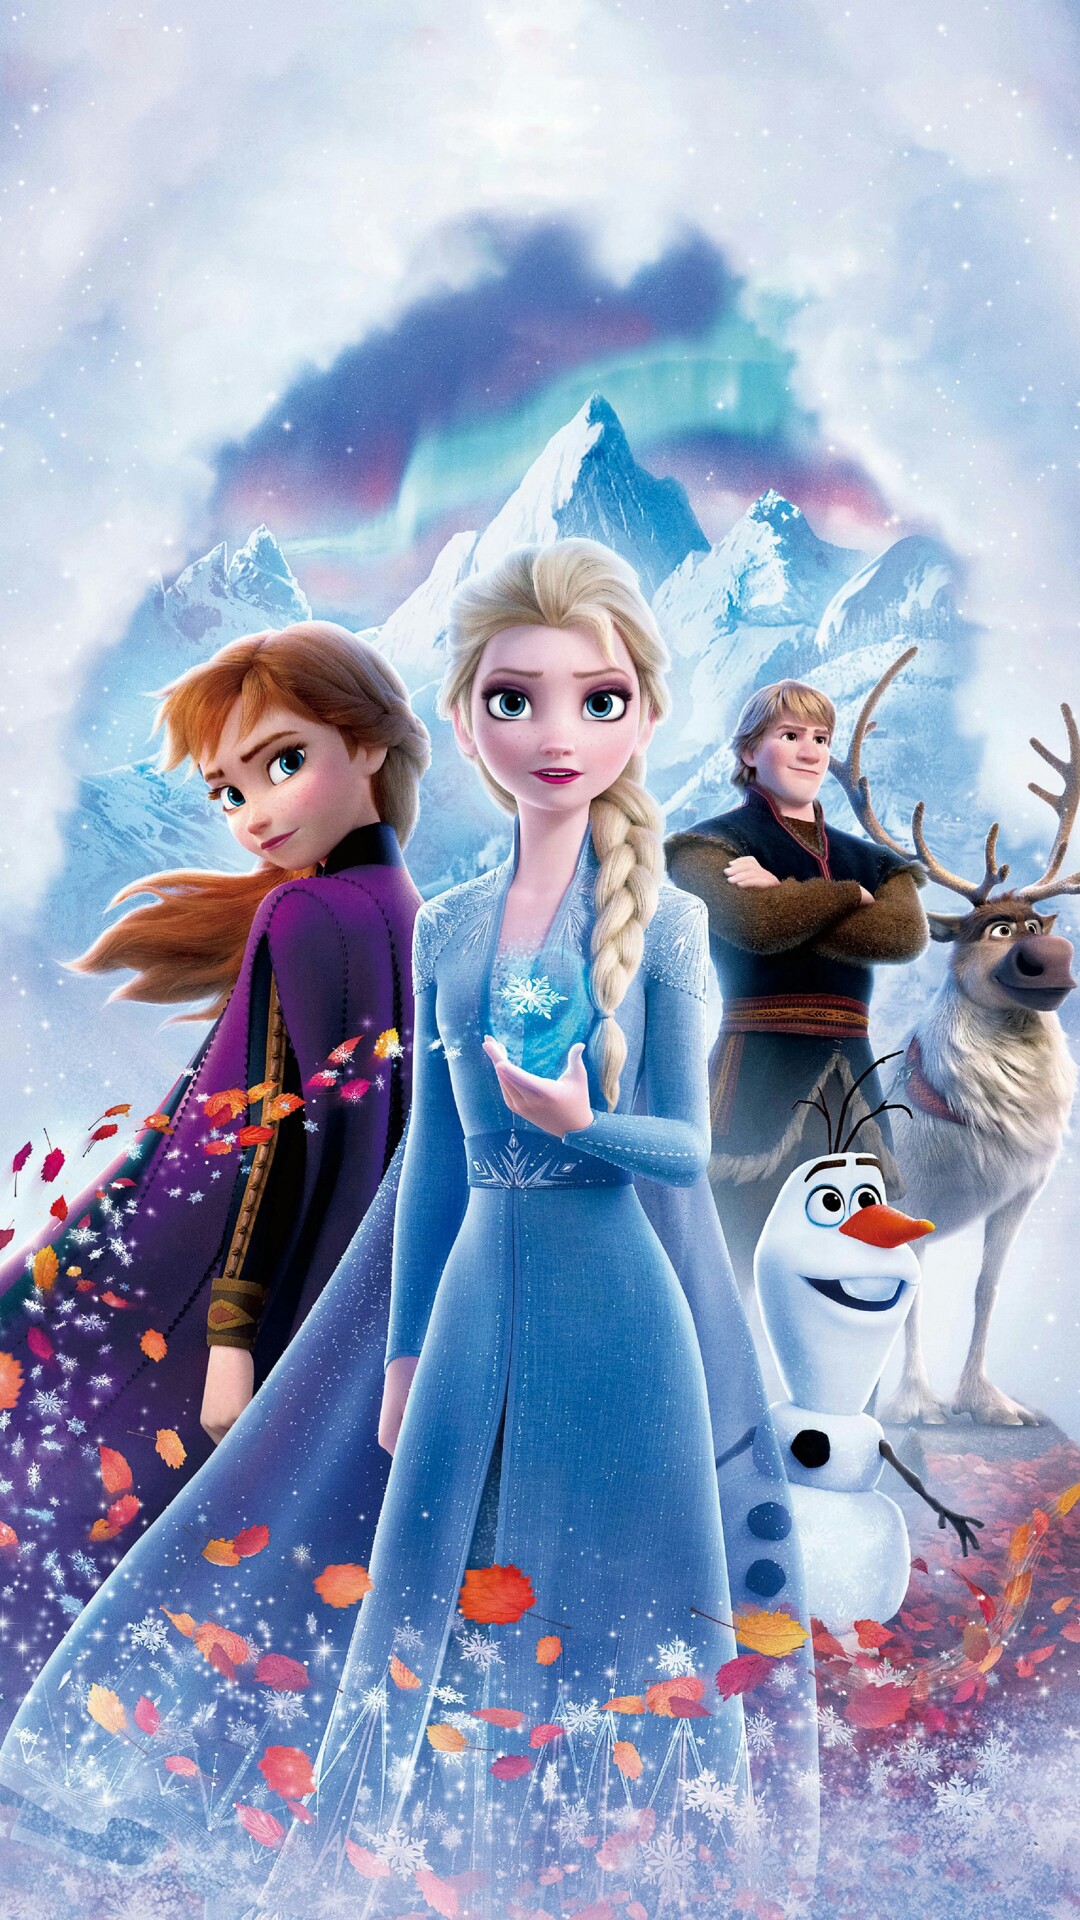 Frozen 2 - Elsa the Snow Queen Photo (42638091) - Fanpop - Page 3